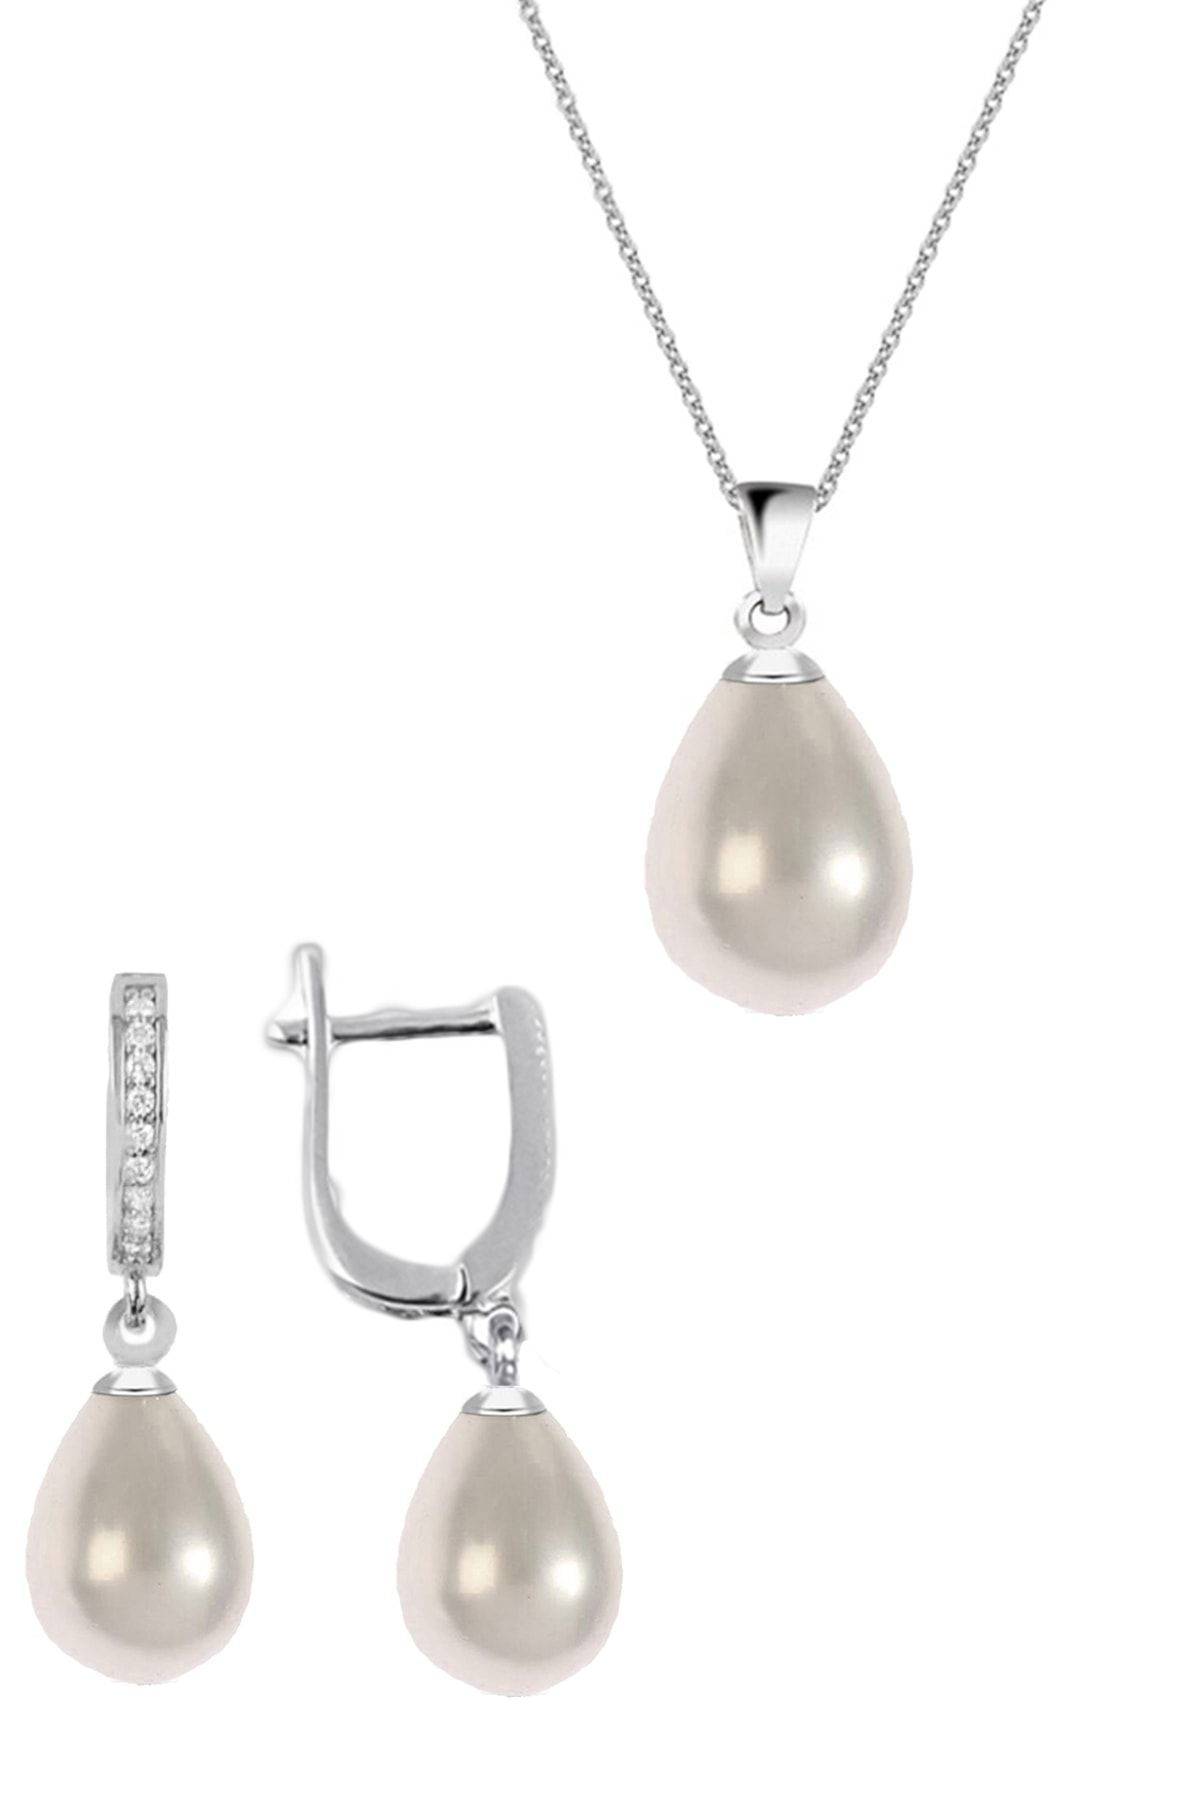 MODERN TAKI Inci Kolye Küpe 925 Ayar Gümüş Pearl Necklace Earrings